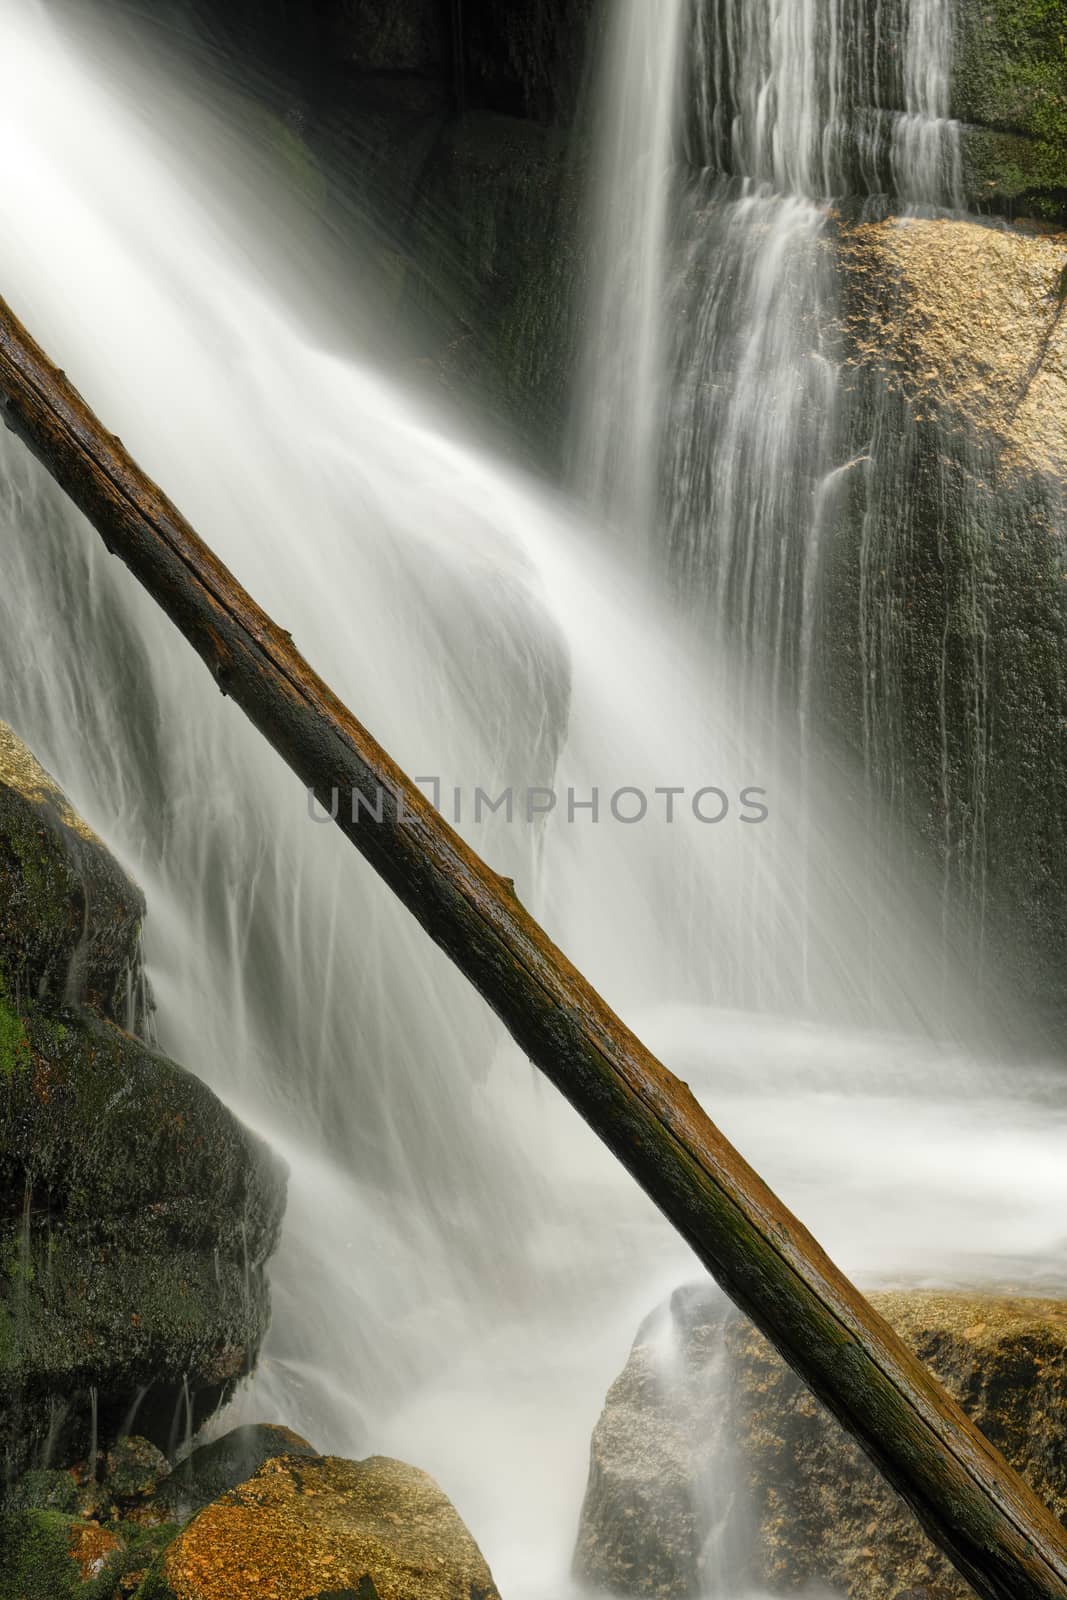 Beautiful view of Potoka Falls in super green forest surroundings, Czech Republic